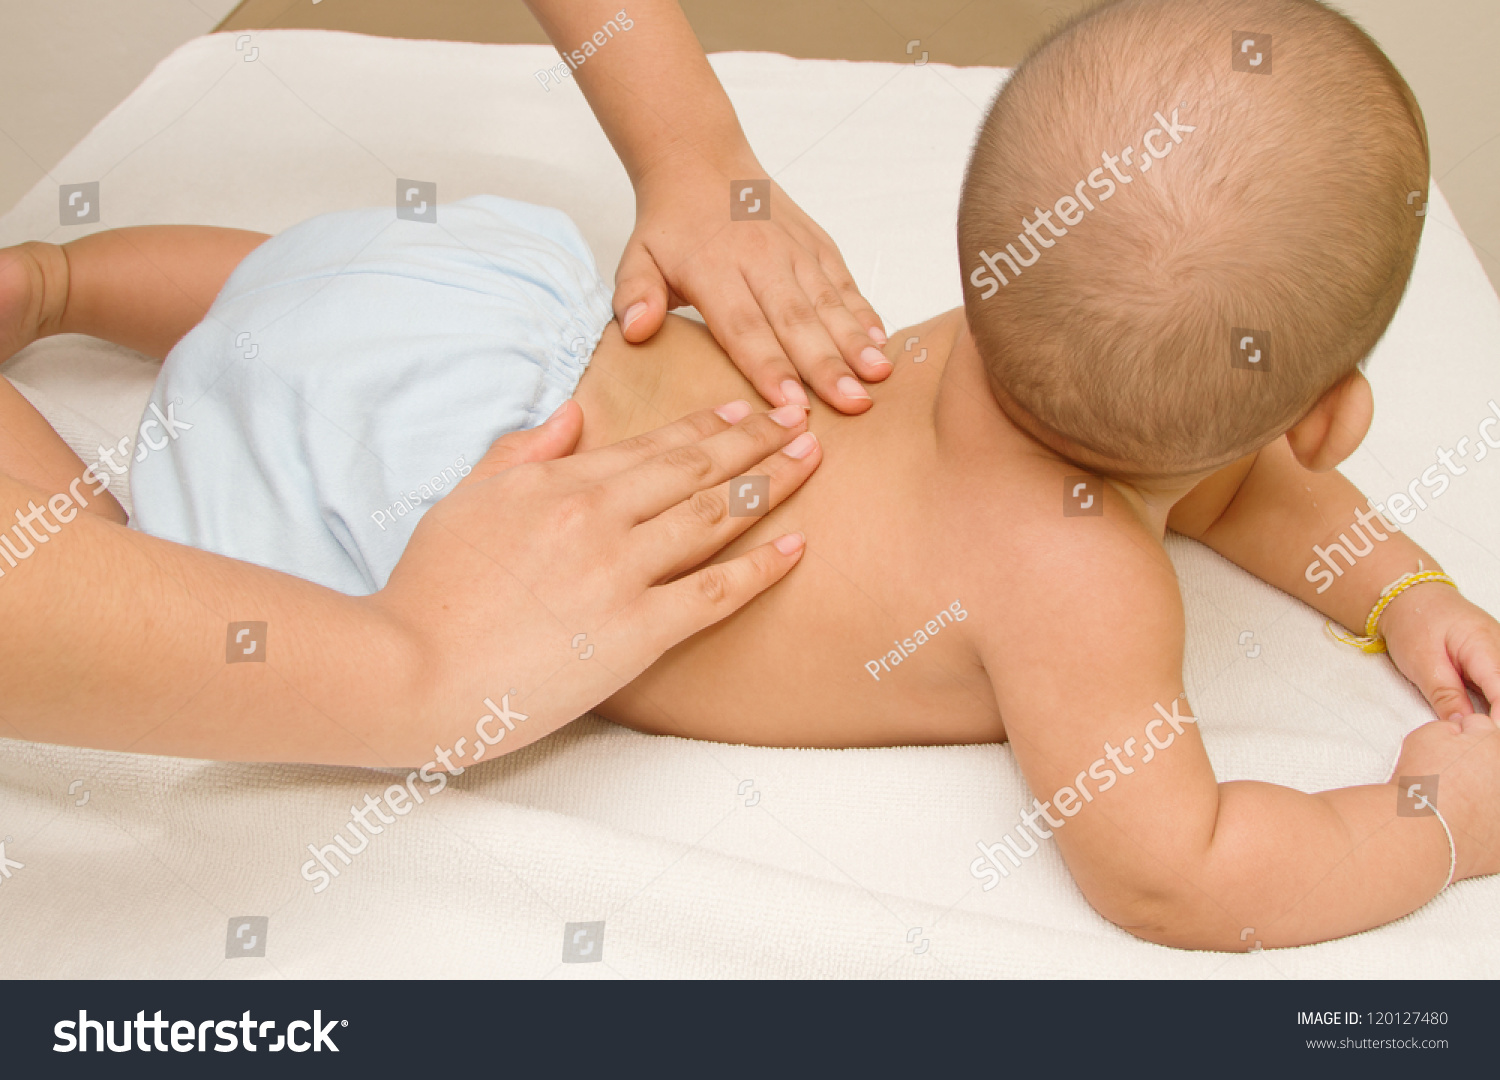 Массаж маме. Массаж животика новорожденному. Массаж грудному ребенку. Детский массаж живота девочке.